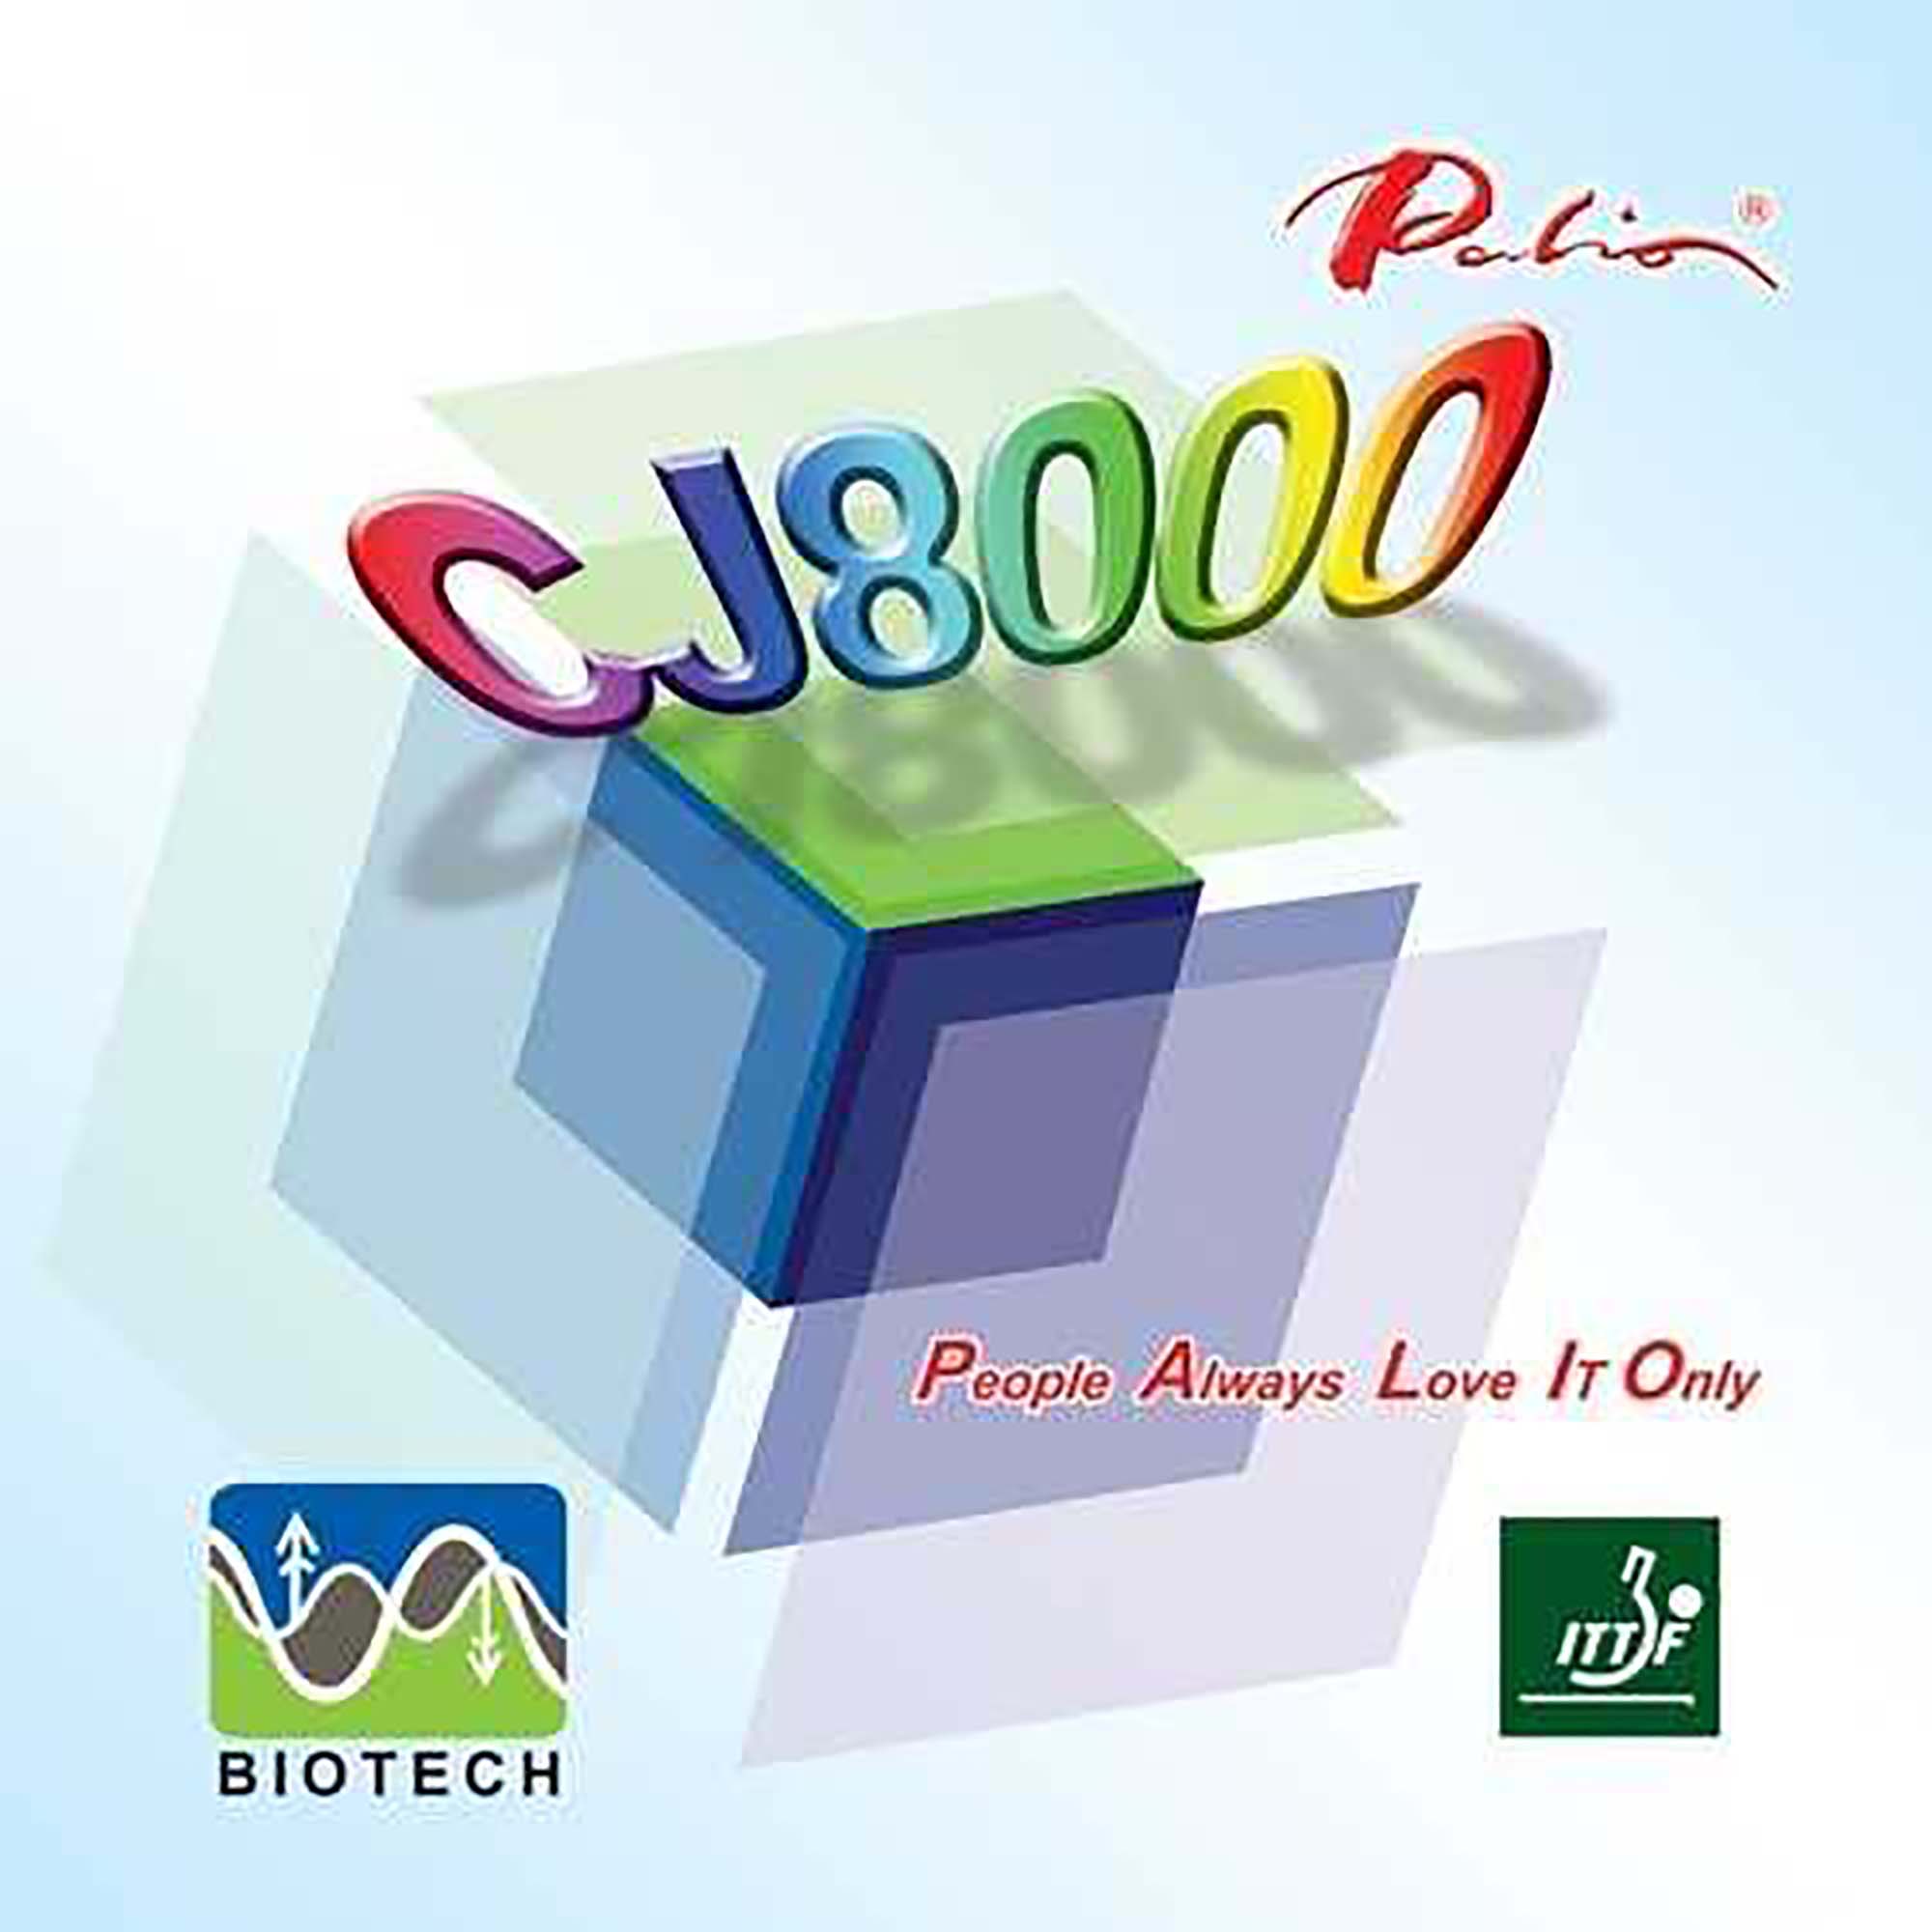 Palio Belag CJ 8000 Biotech 42-44°